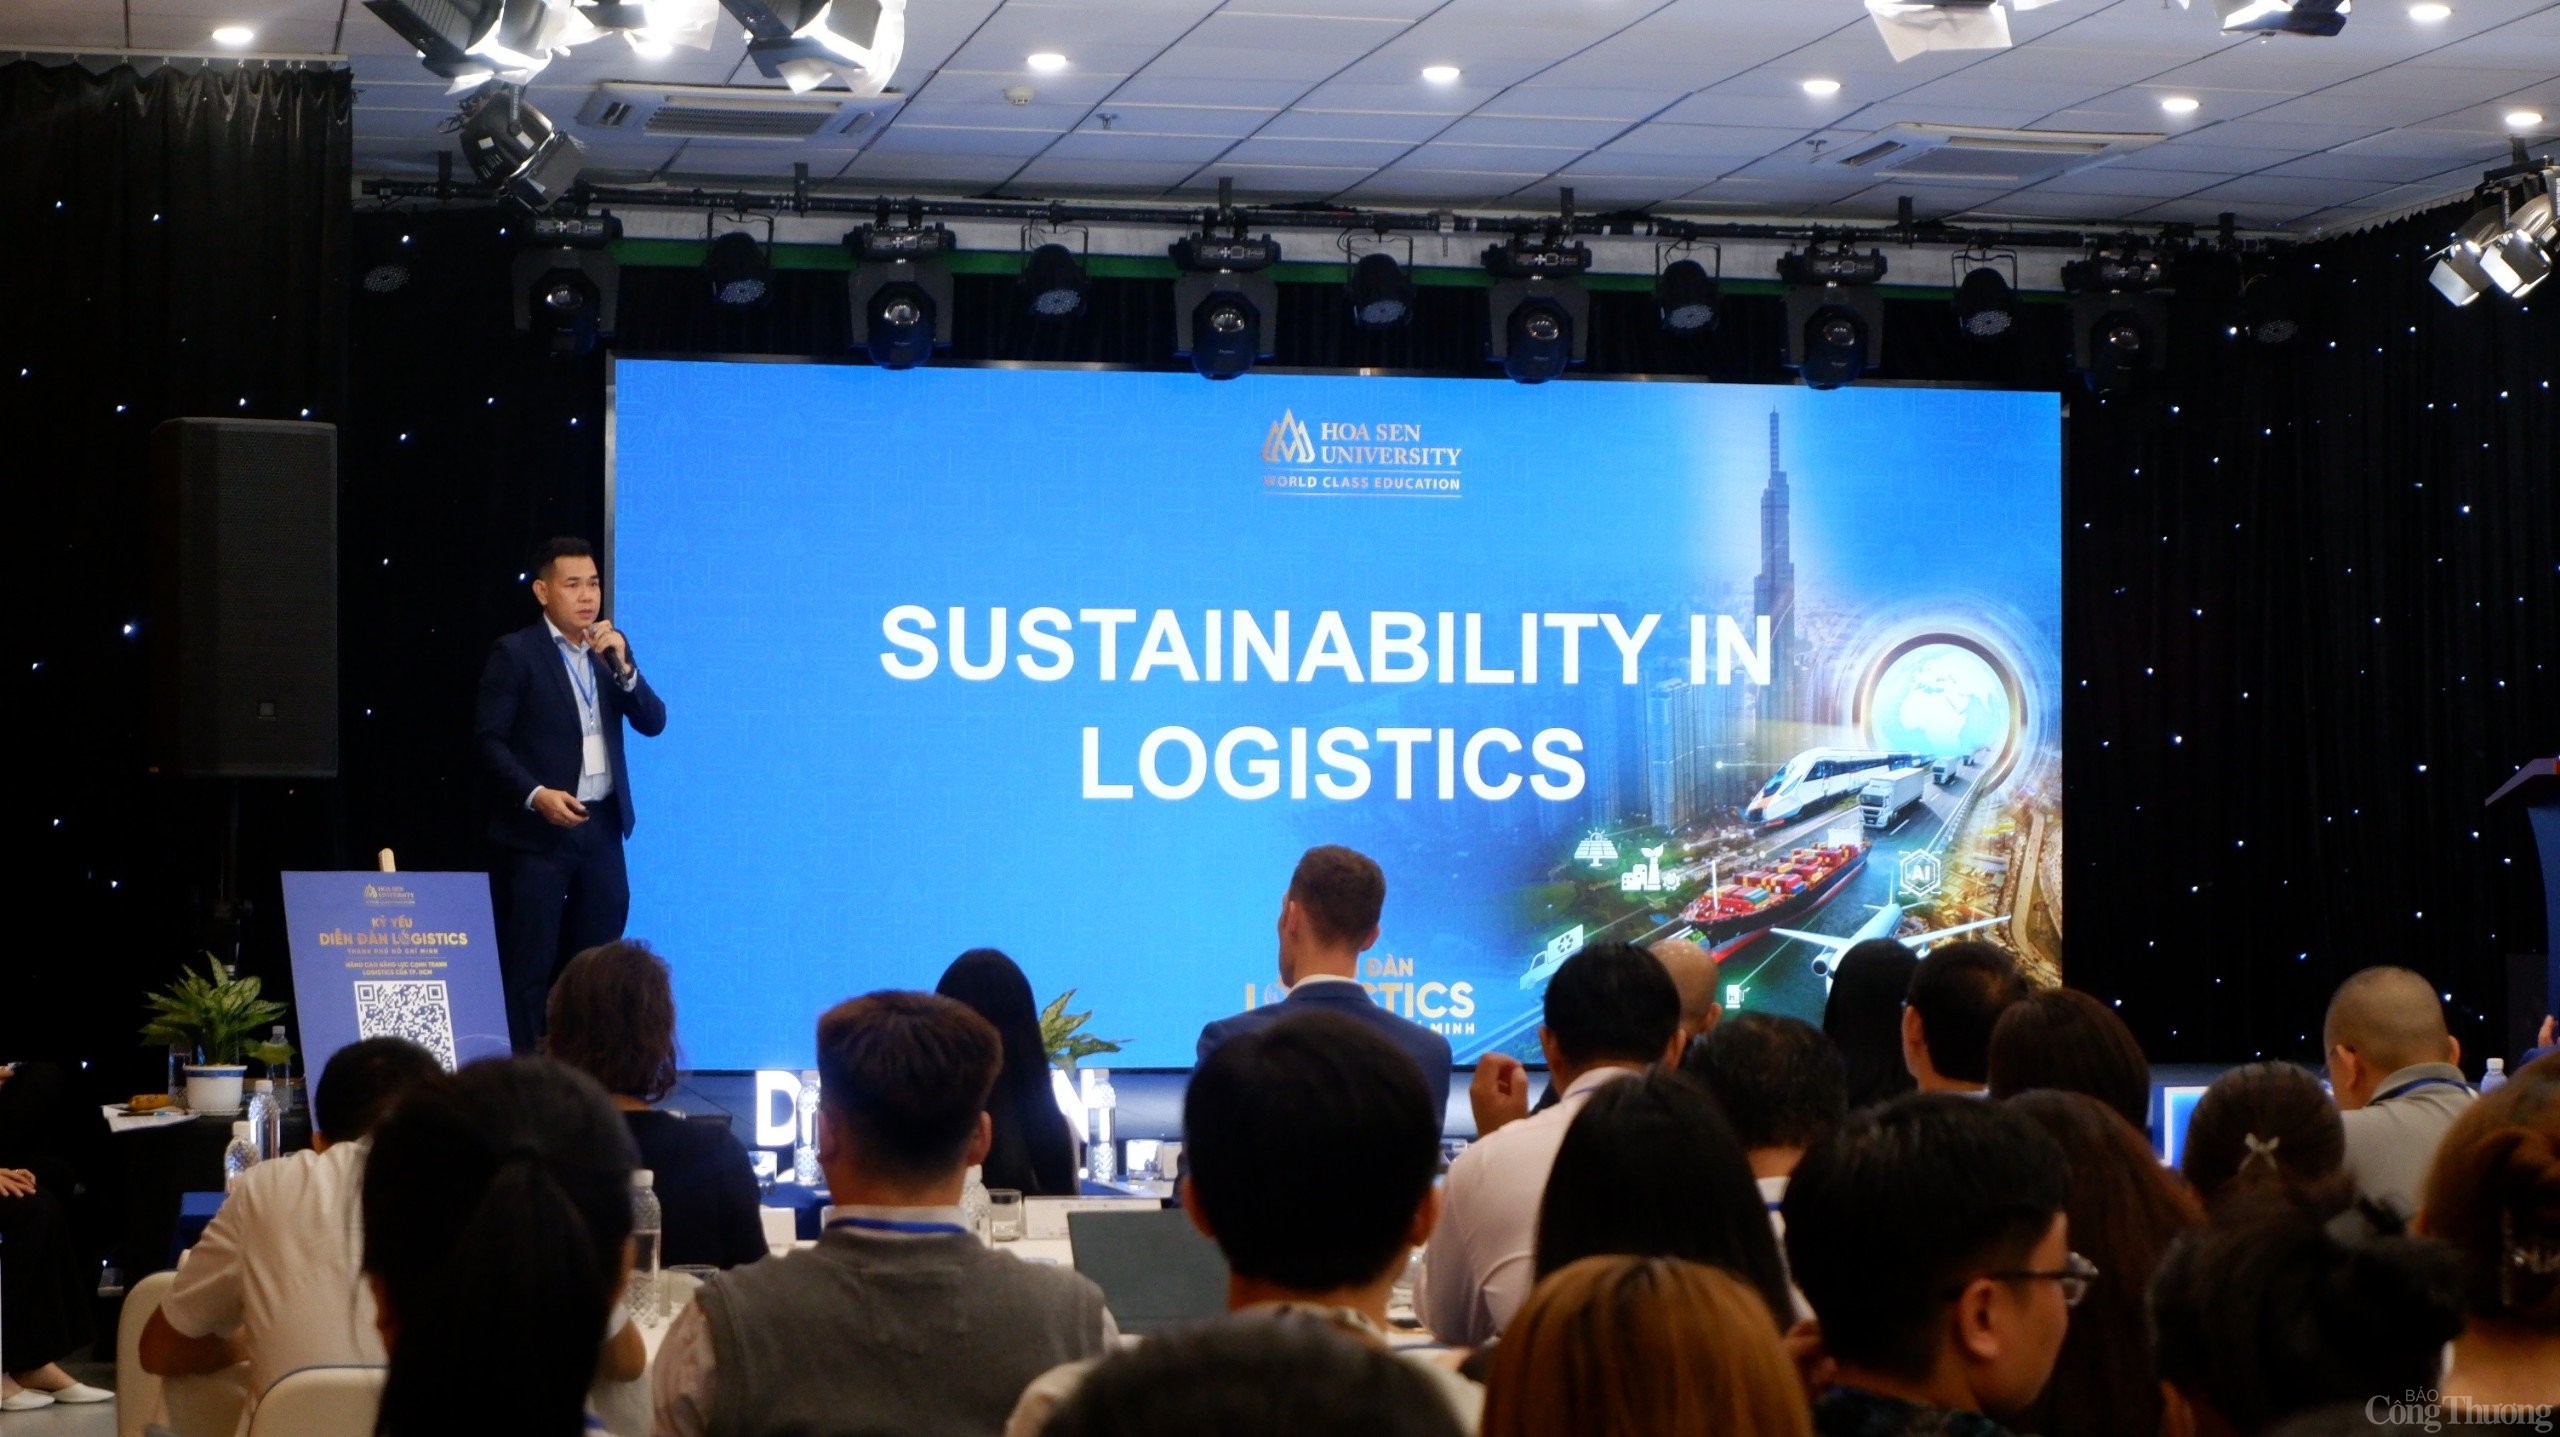 TP. Hồ Chí Minh: Làm thế nào để nâng cao năng lực canh tranh logistics?